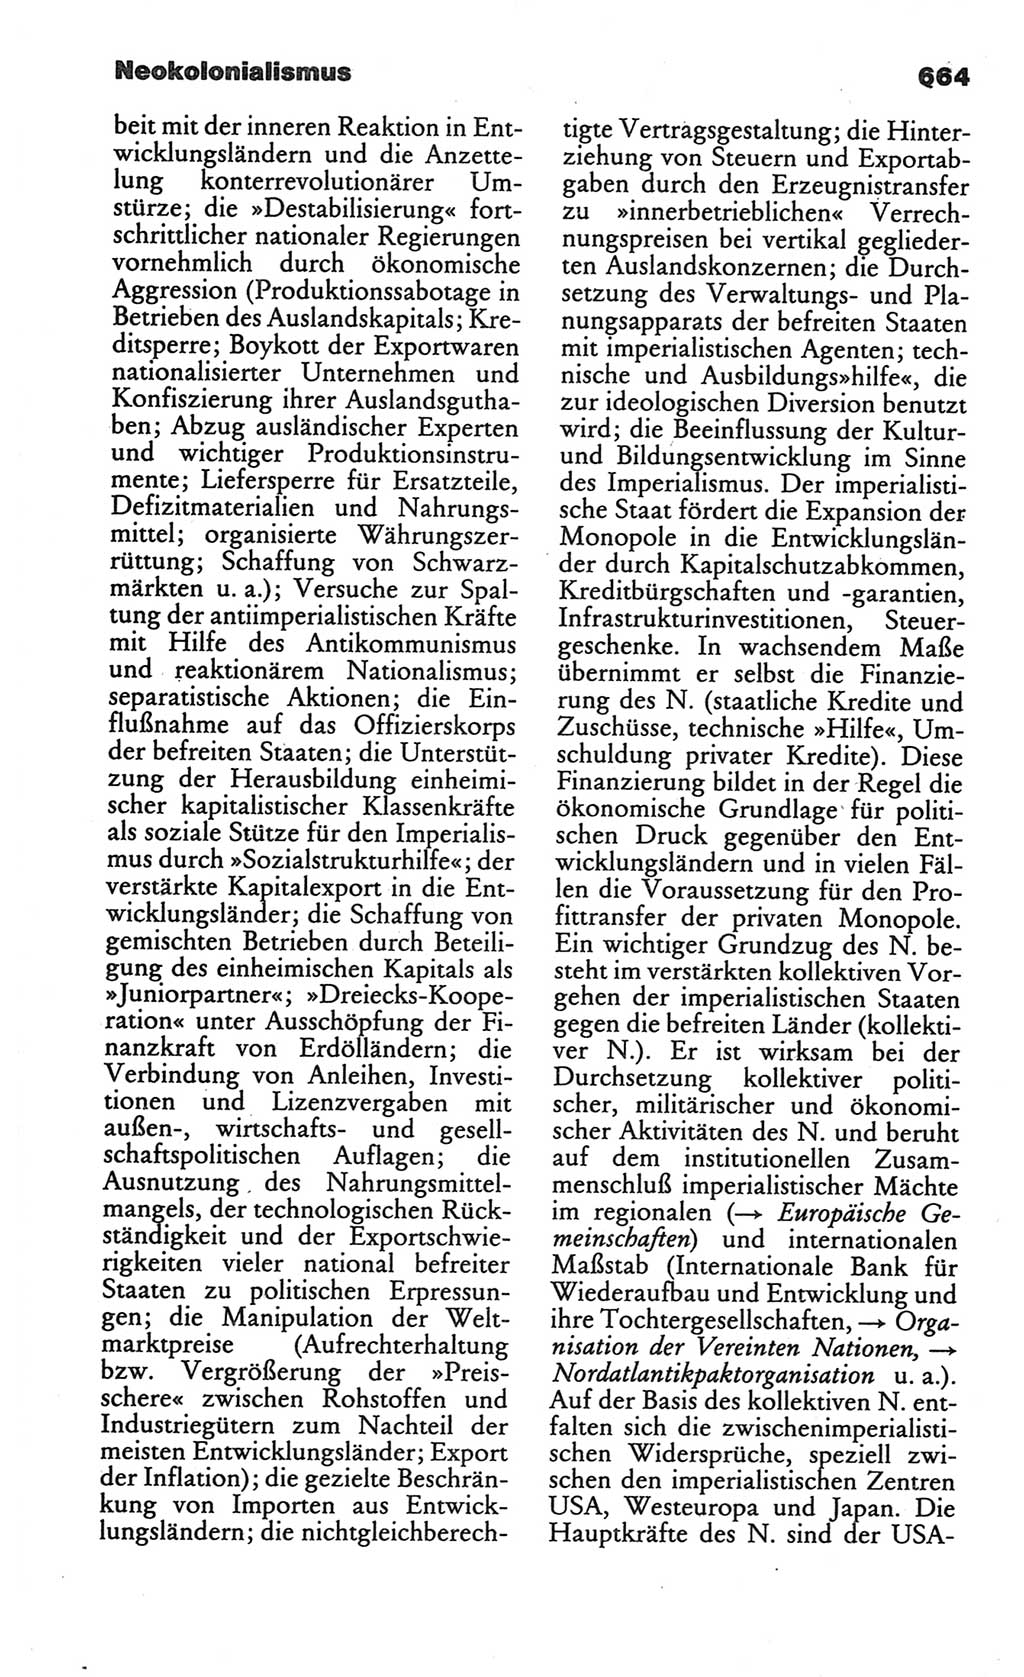 Kleines politisches Wörterbuch [Deutsche Demokratische Republik (DDR)] 1986, Seite 664 (Kl. pol. Wb. DDR 1986, S. 664)